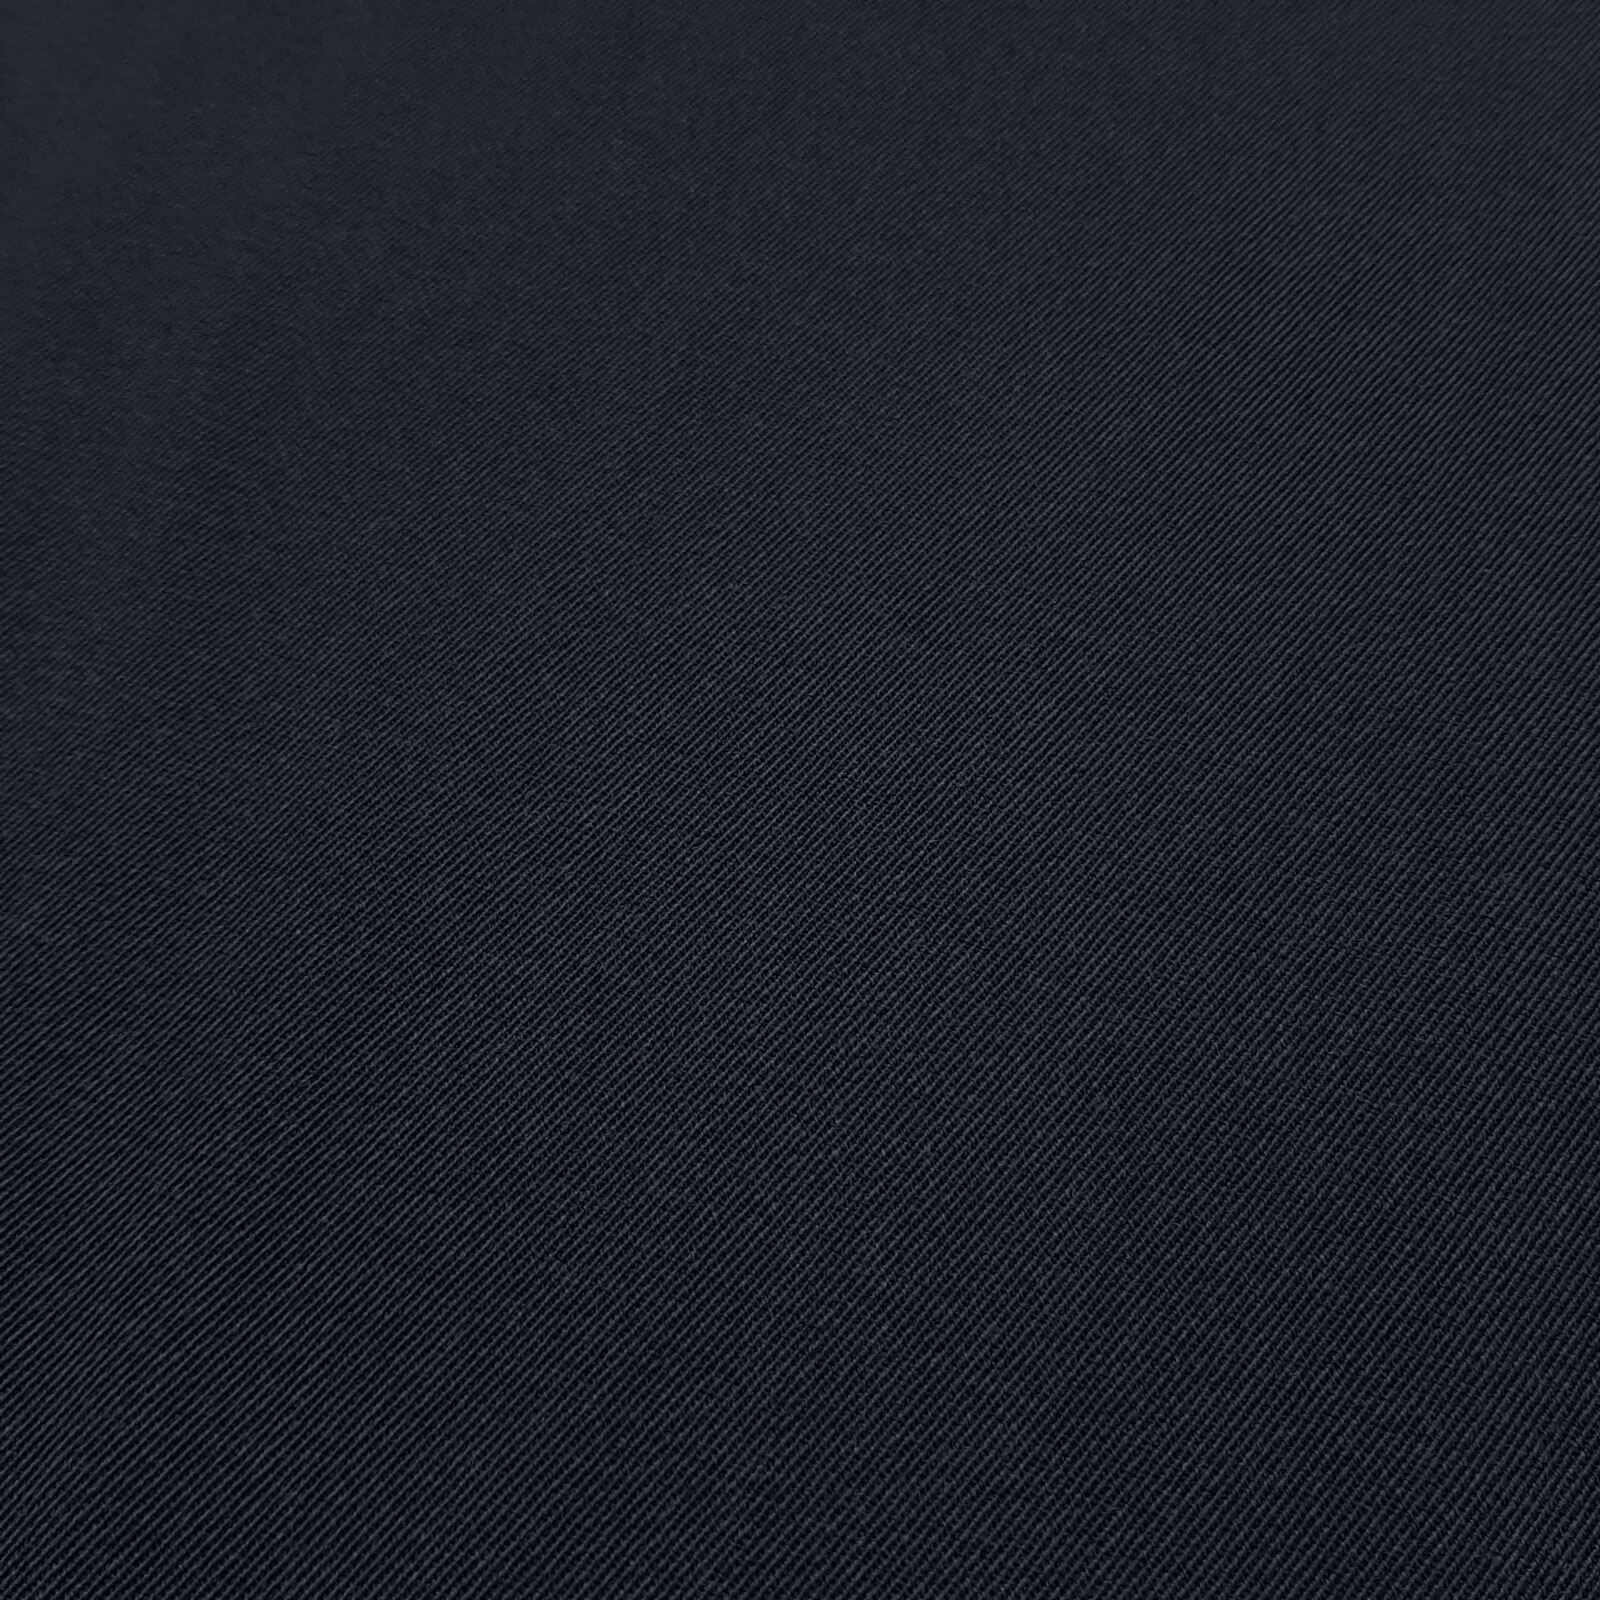 Franziska - 100% laine vierge drap de laine / drap d'uniforme – Marine